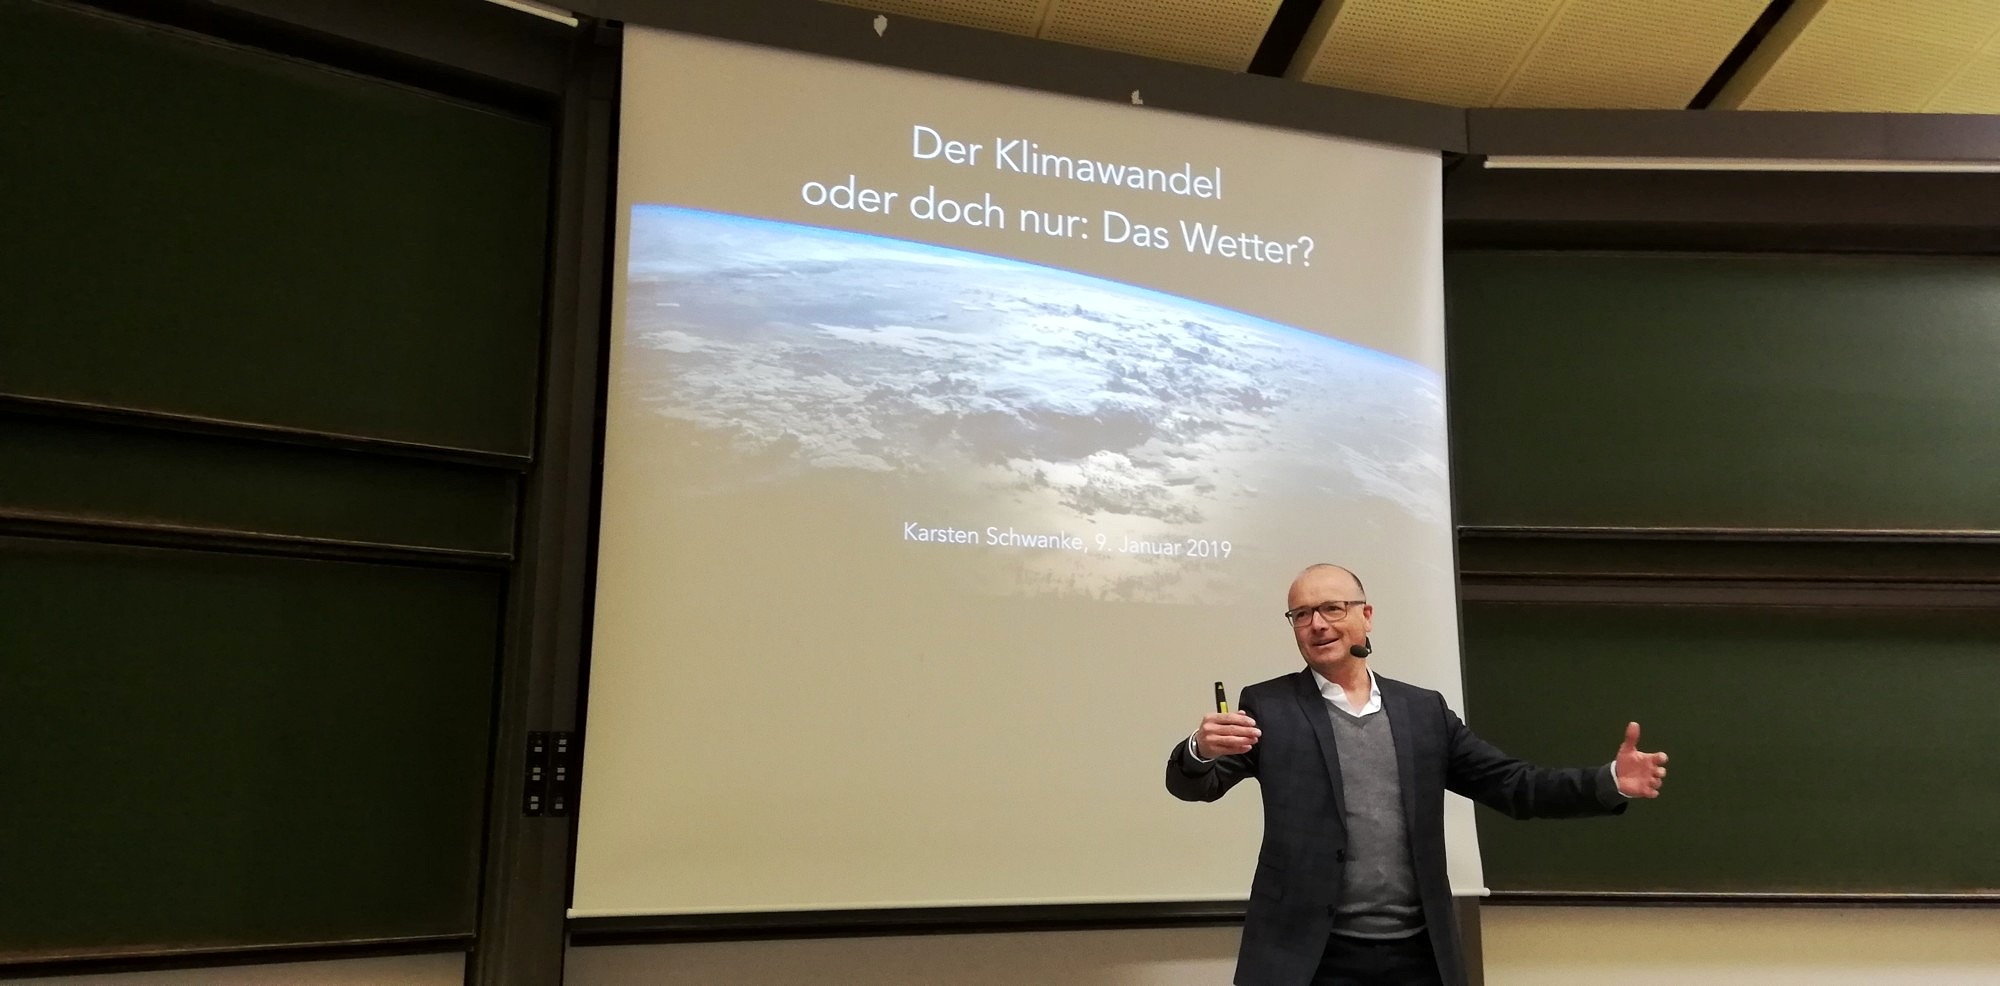 Towards entry "„Der Klimawandel oder doch nur: Das Wetter?“ – Lecture by Karsten Schwanke"